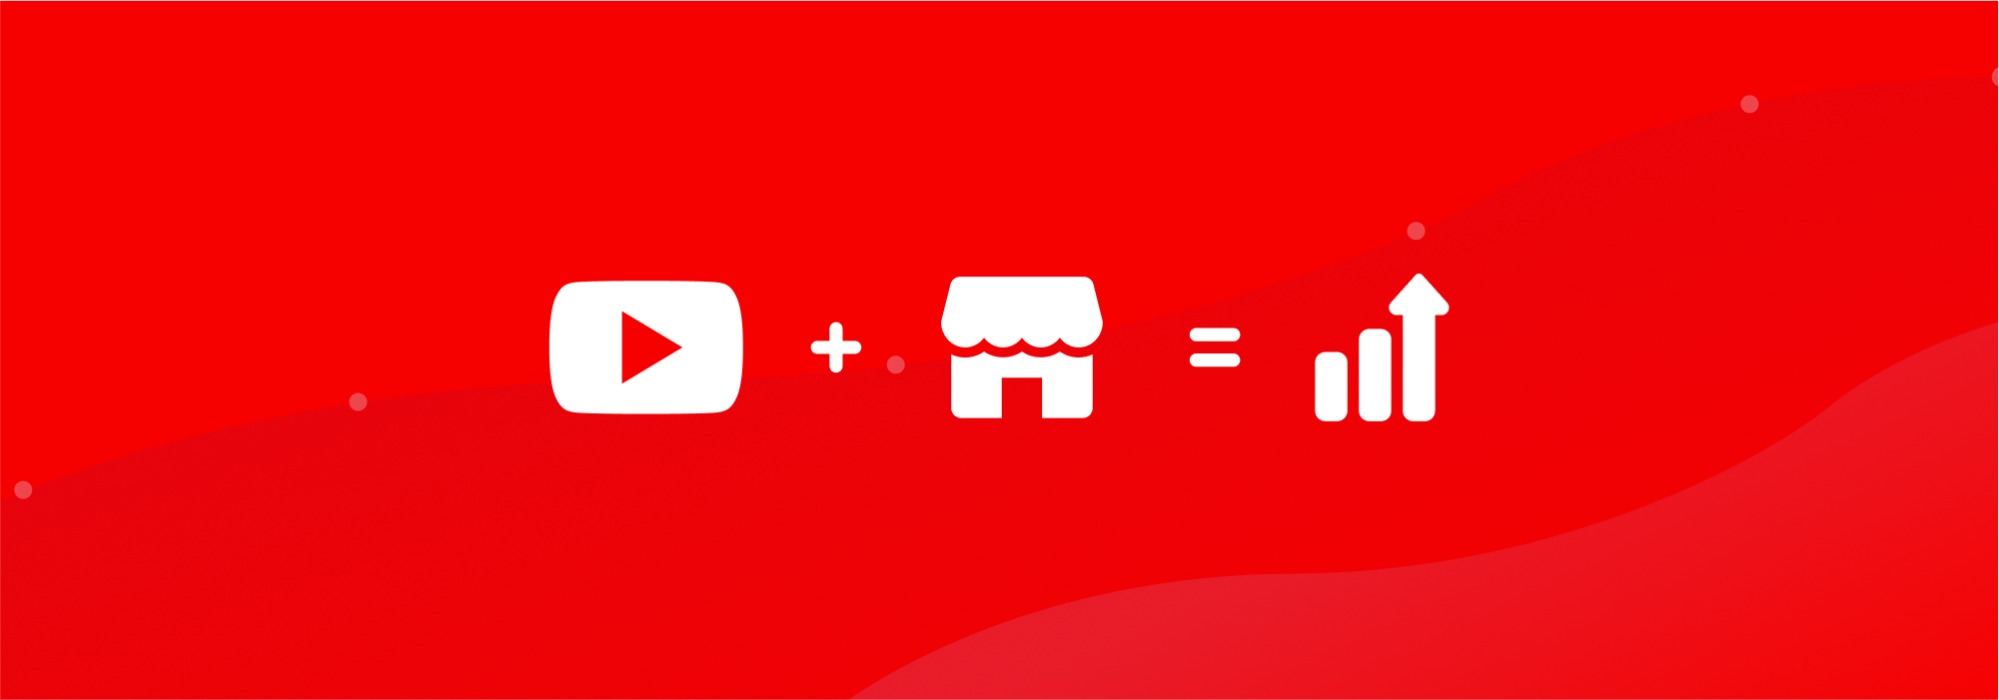 Ідеальний союз: як YouTube-канал допомагає просуванню інтернет-магазину